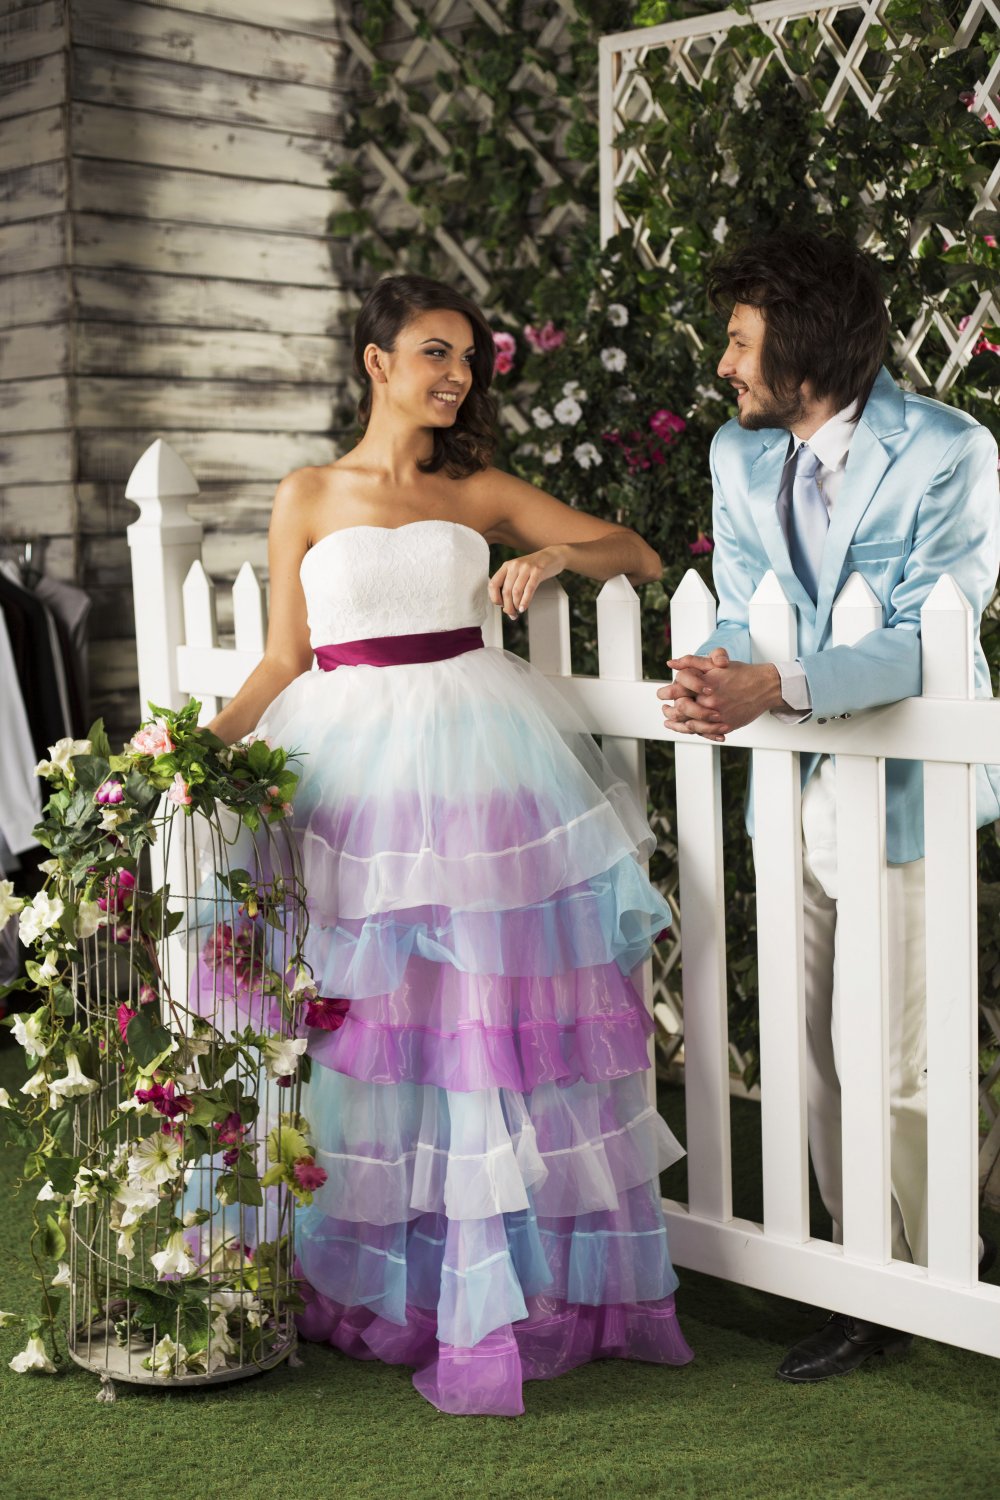 Оригинальное платье невесты в фиолетовых и голубых тонах